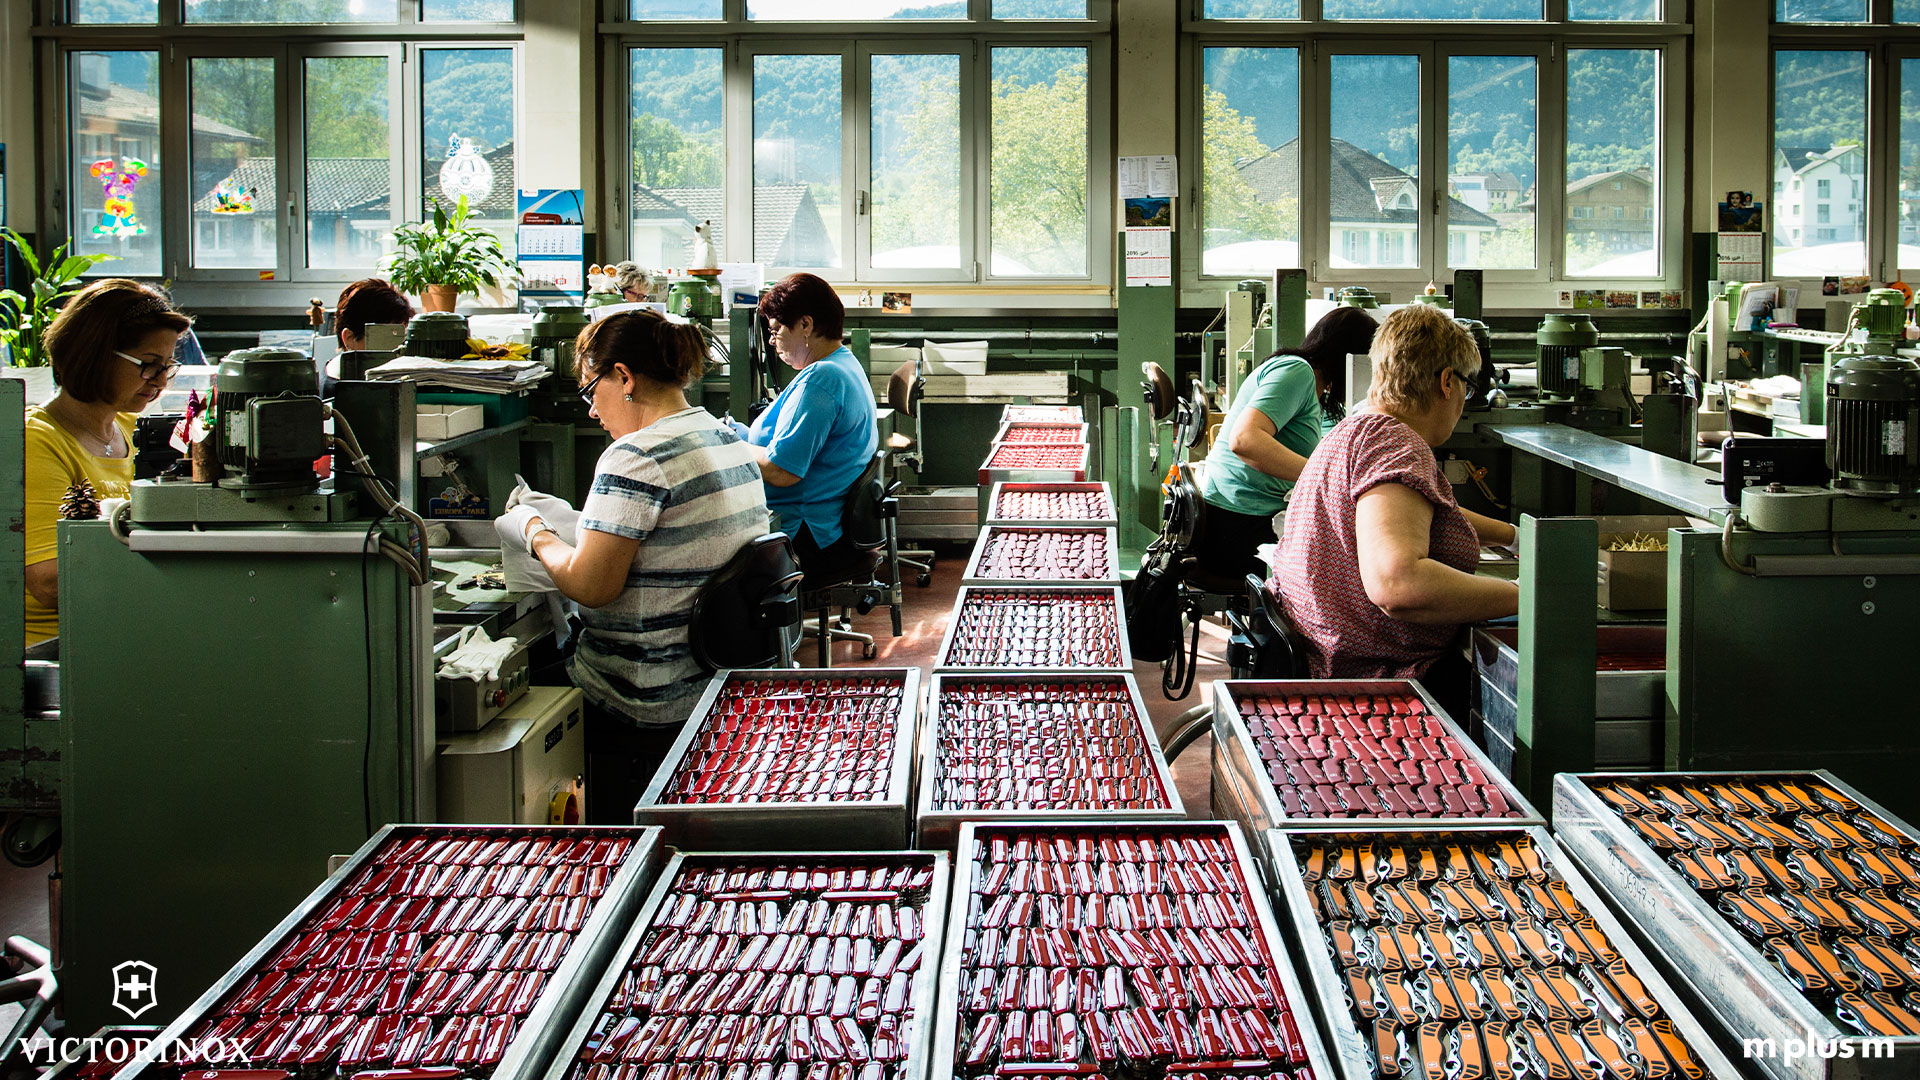 Handwerklich Produktion von Schweizer Taschenmessern bei Victorinox